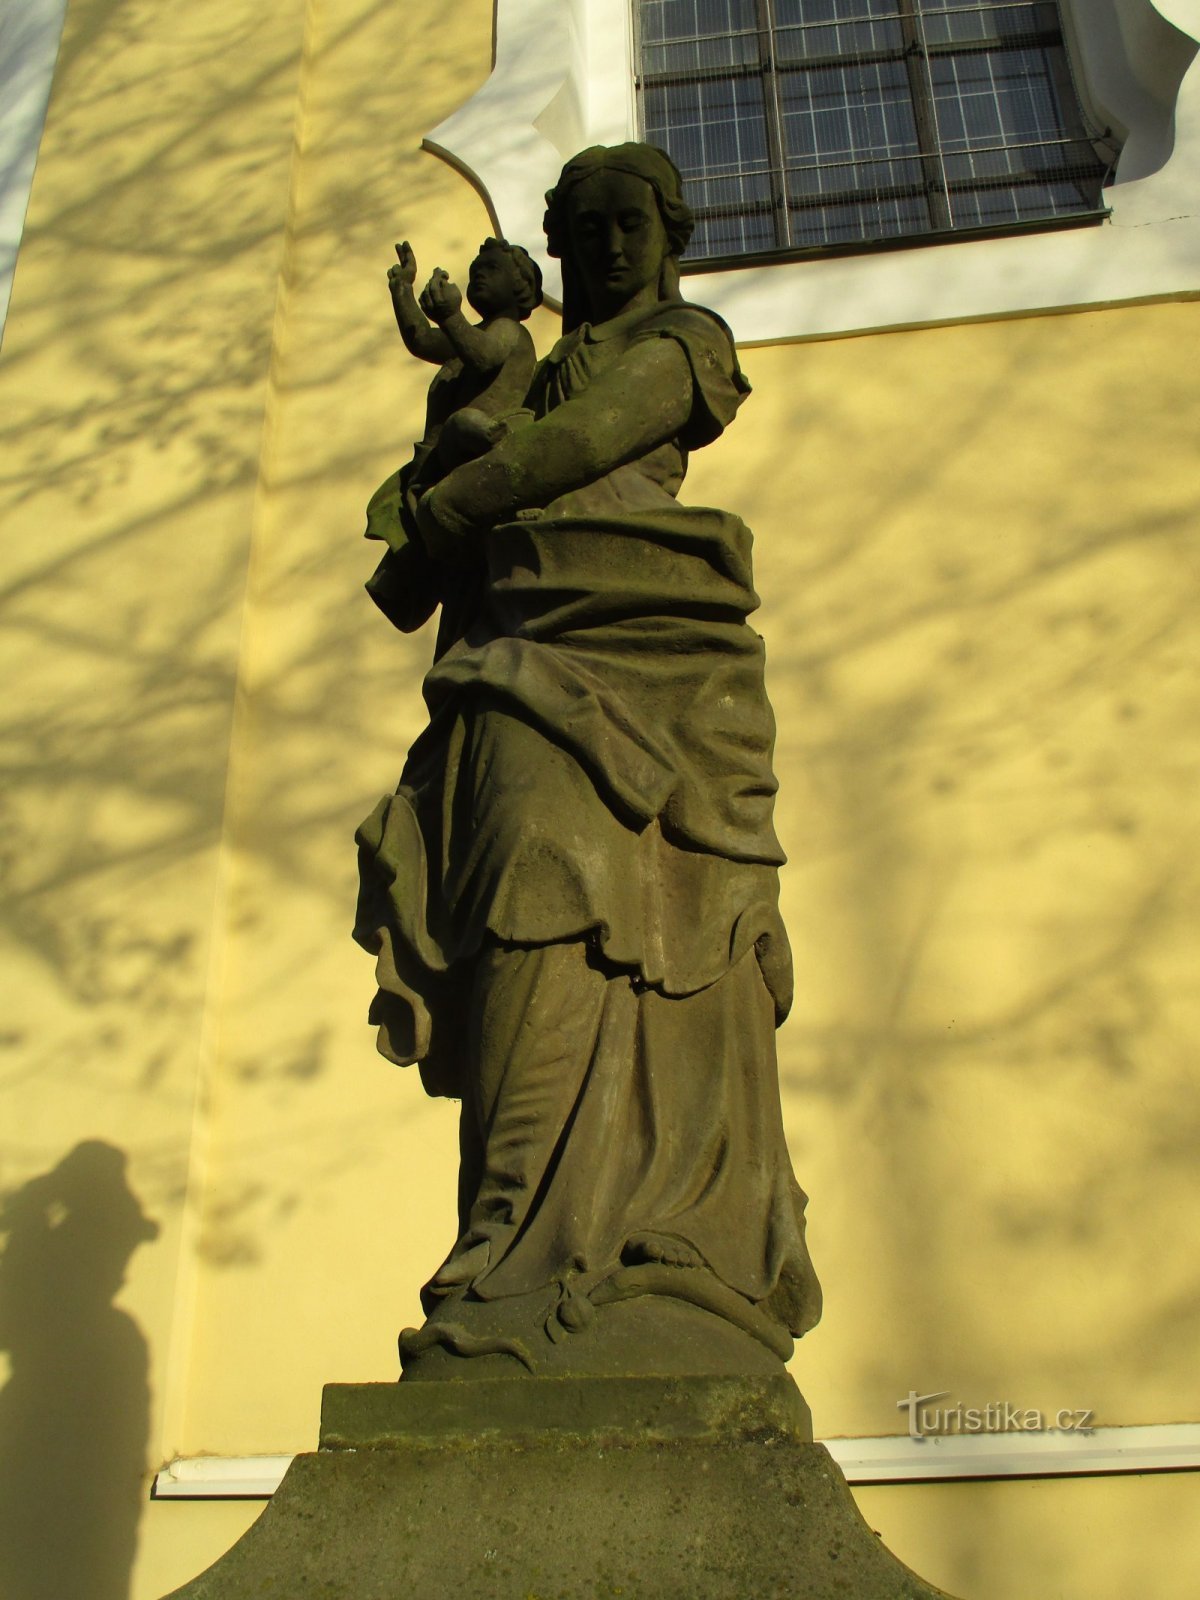 Статуя Діви Марії (Nový Gradec Králové, 17.11.2019/XNUMX/XNUMX)